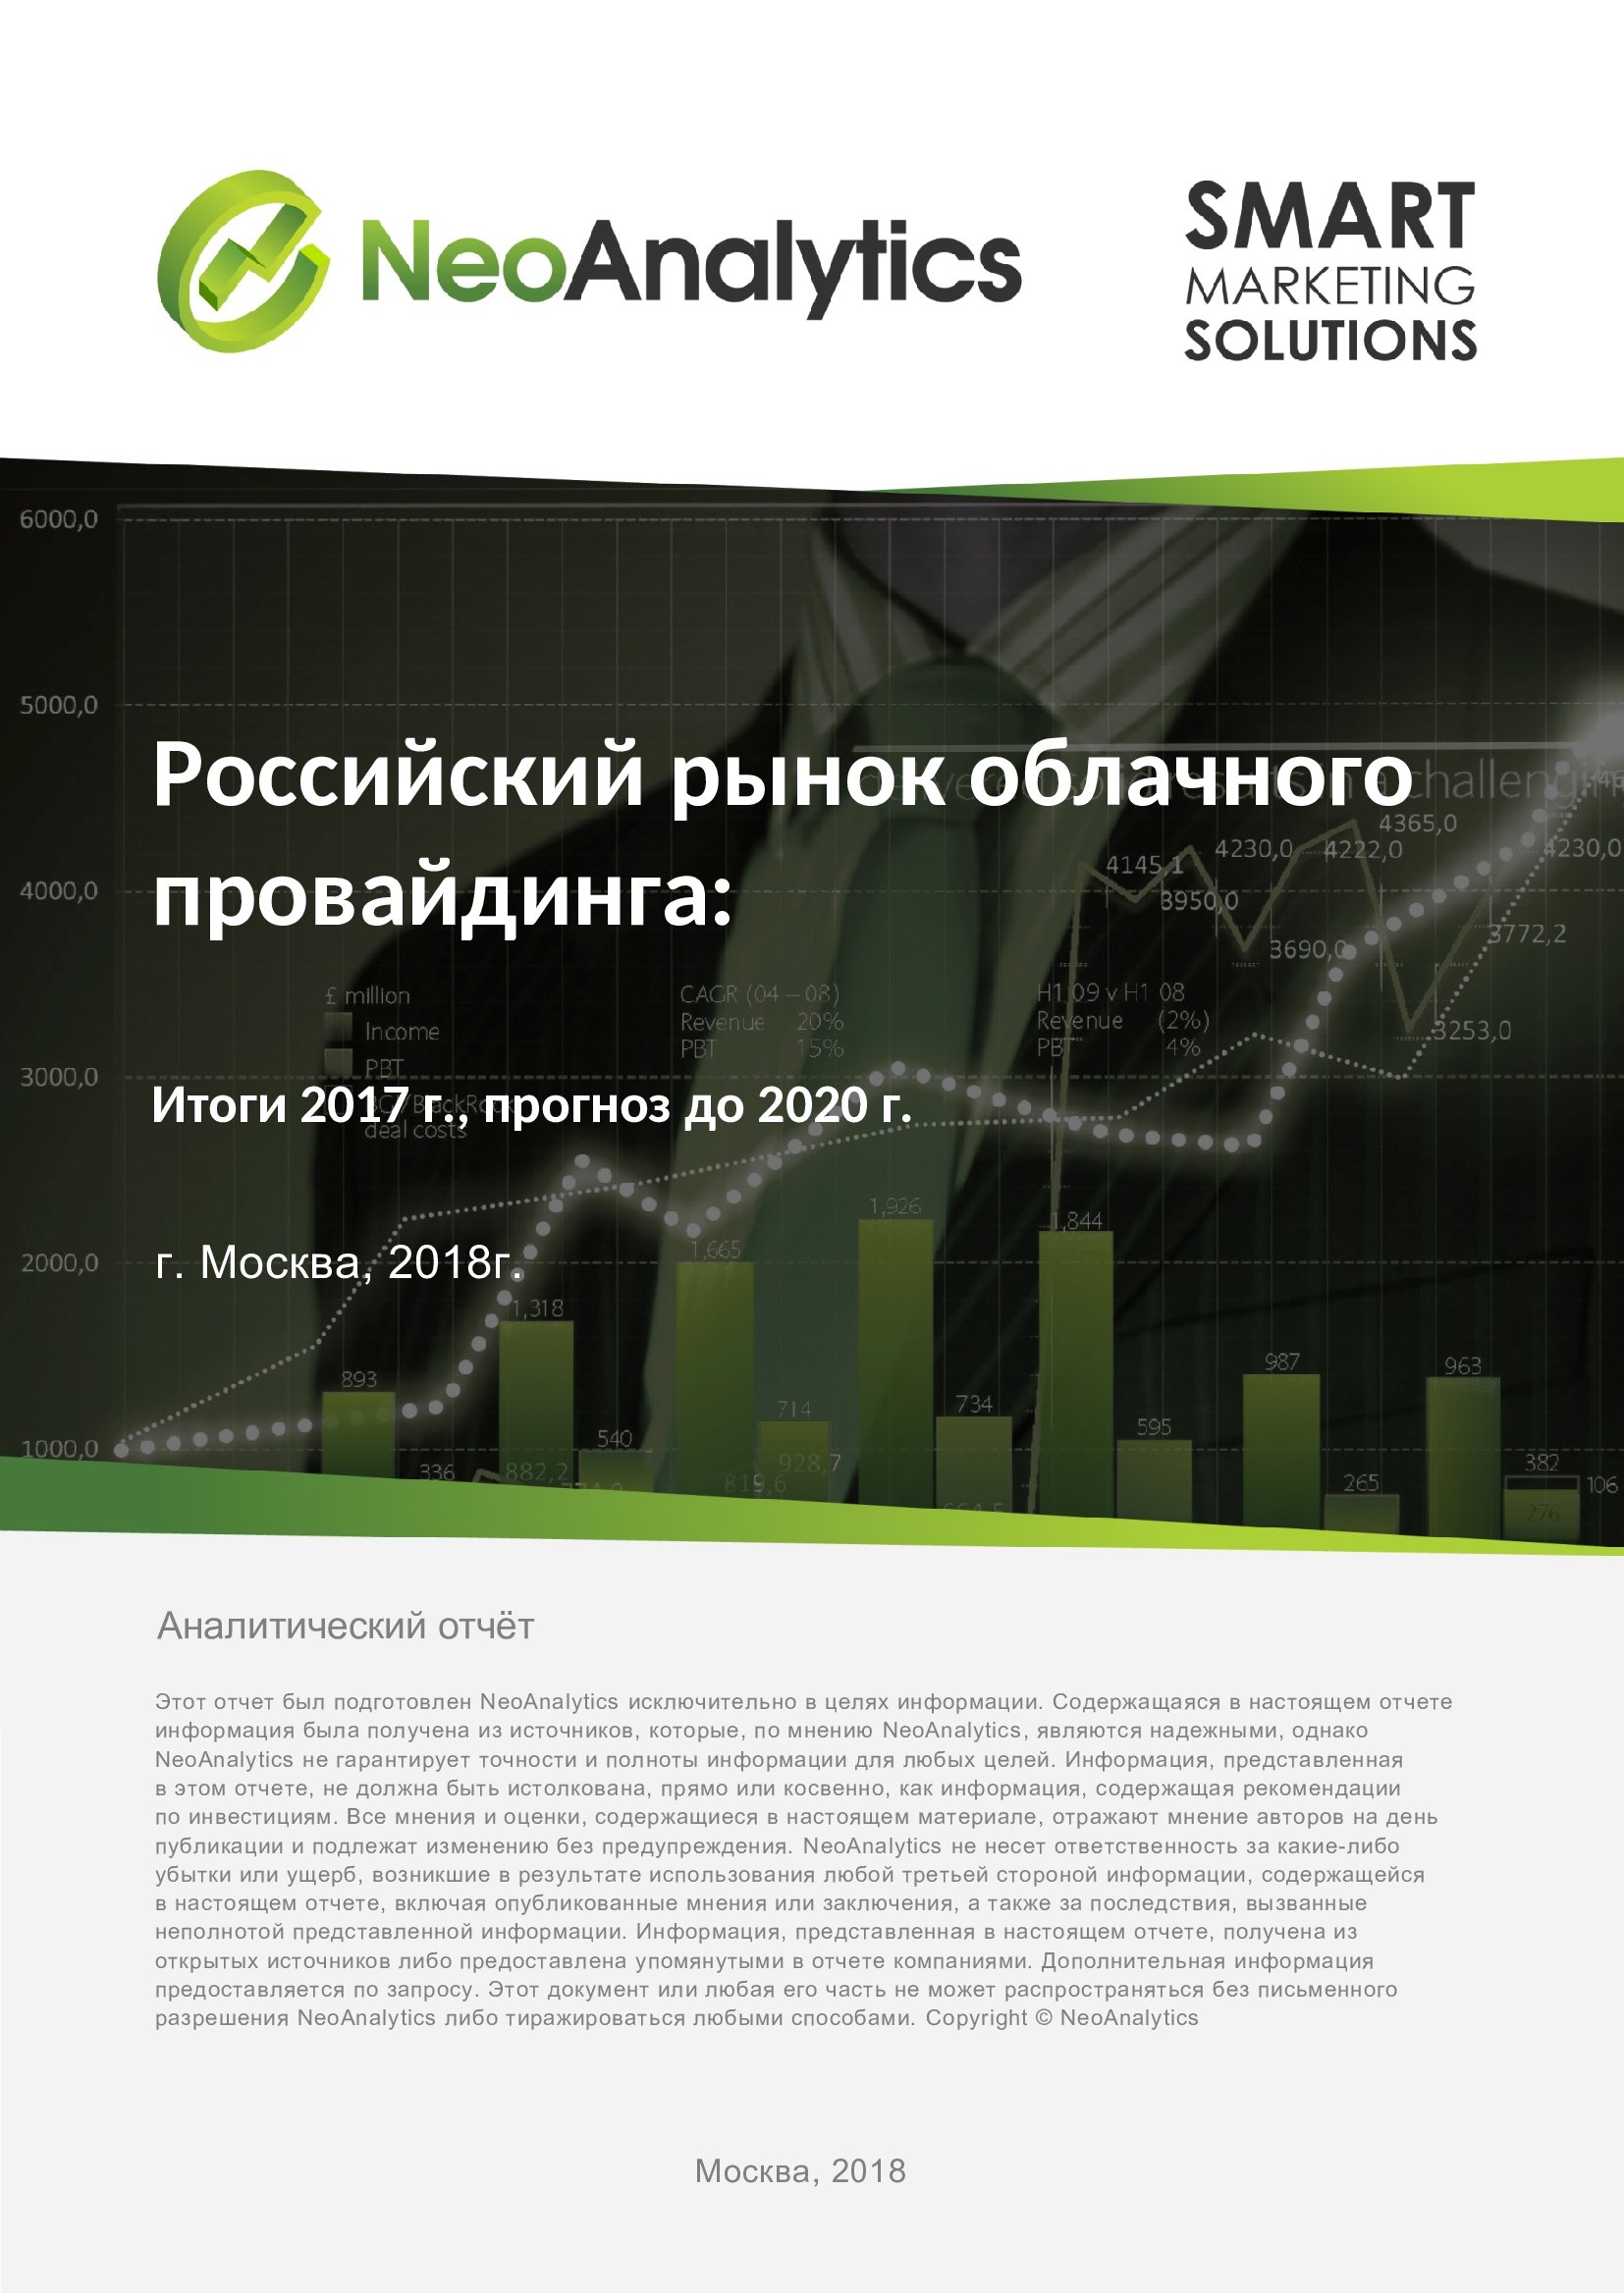 Анализ российского рынка облачного провайдинга: итоги 2017 г., прогноз до 2020 г.